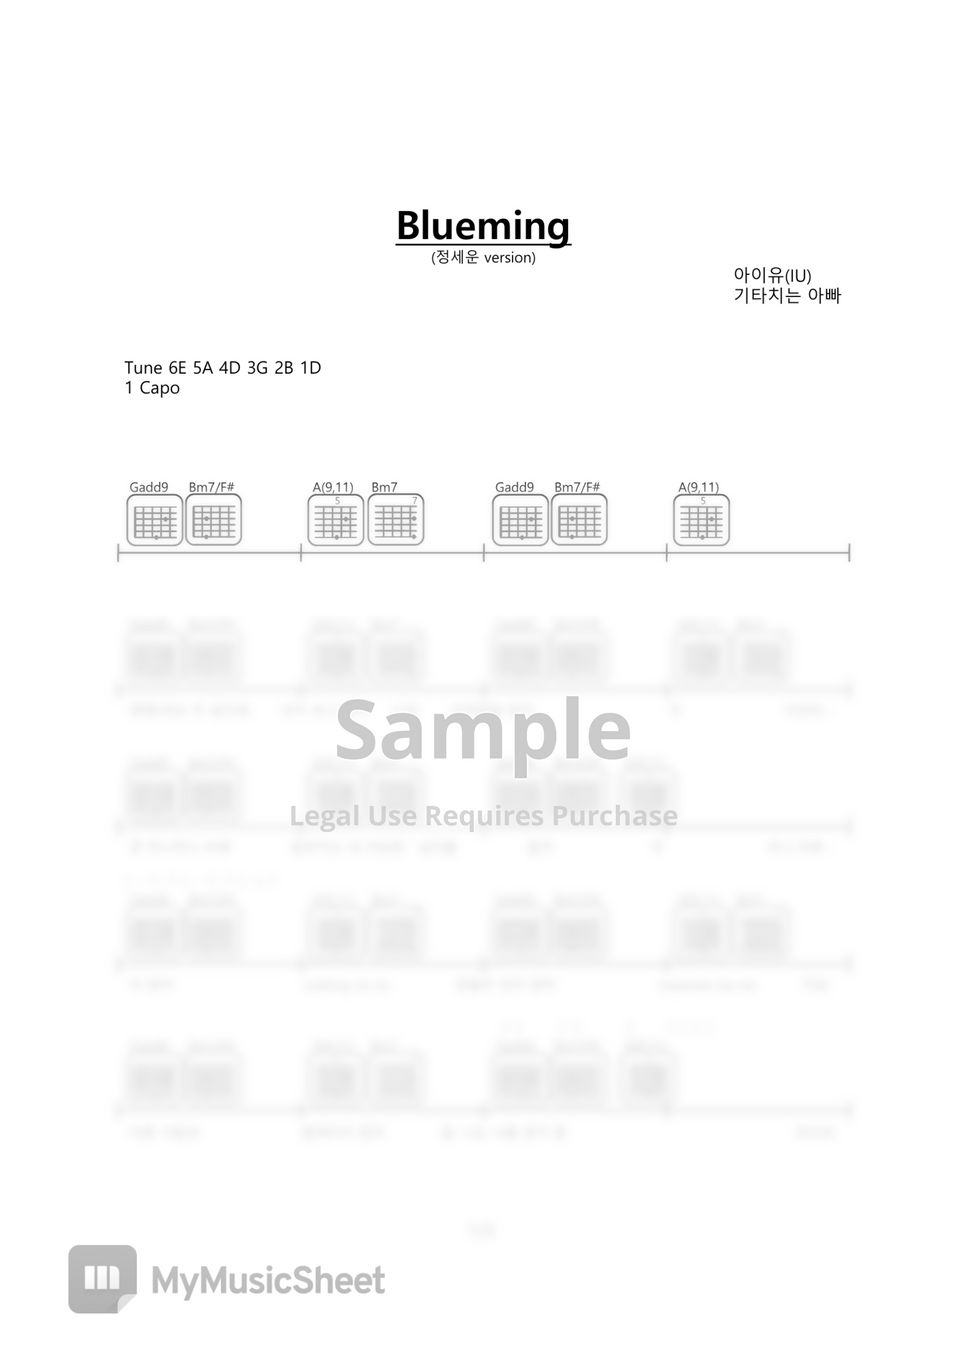 아이유(IU) - Blueming guitar chords sheet (정세운 version) by 기타치는아빠(GuitarPD)